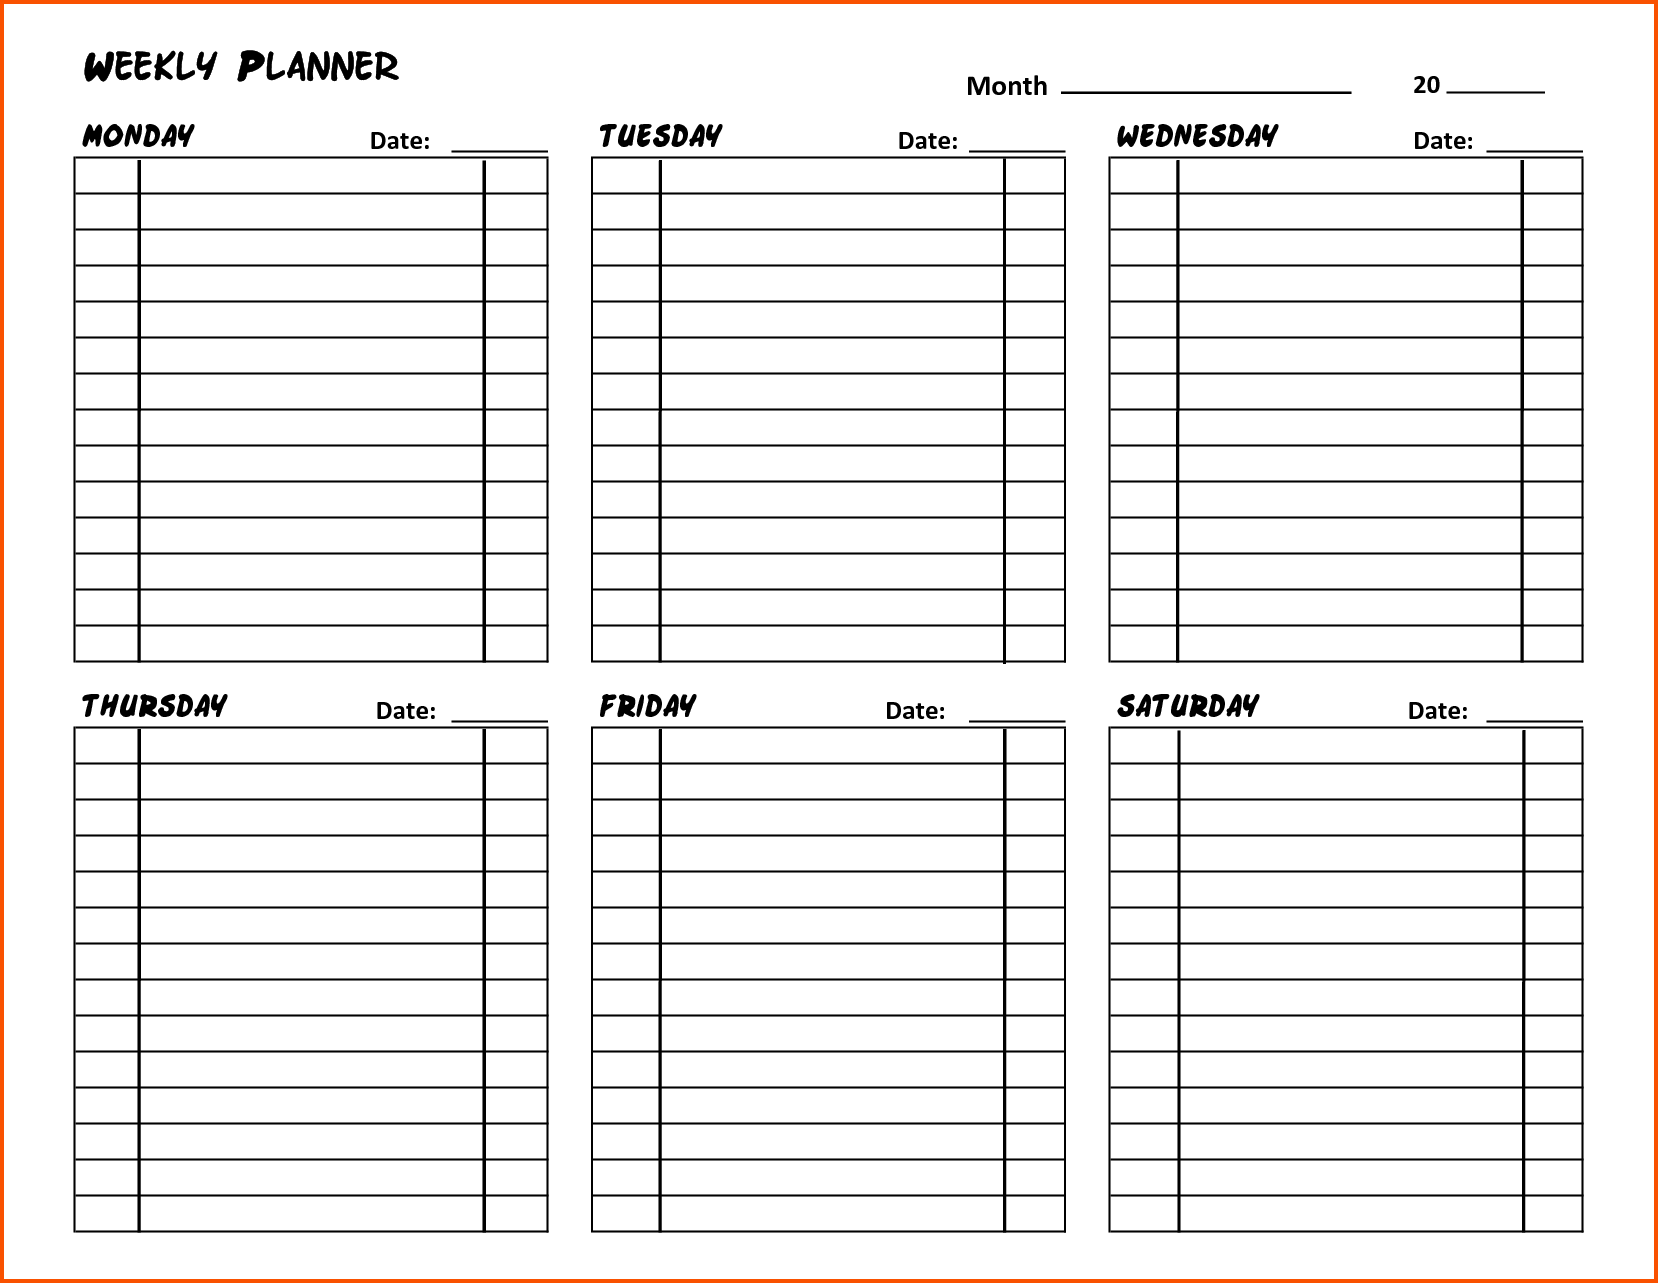 Недельная таблица. Weekly Planner шаблон для печати. Ежедневник планер шаблон в excel. Лист план на день. Недельный план.